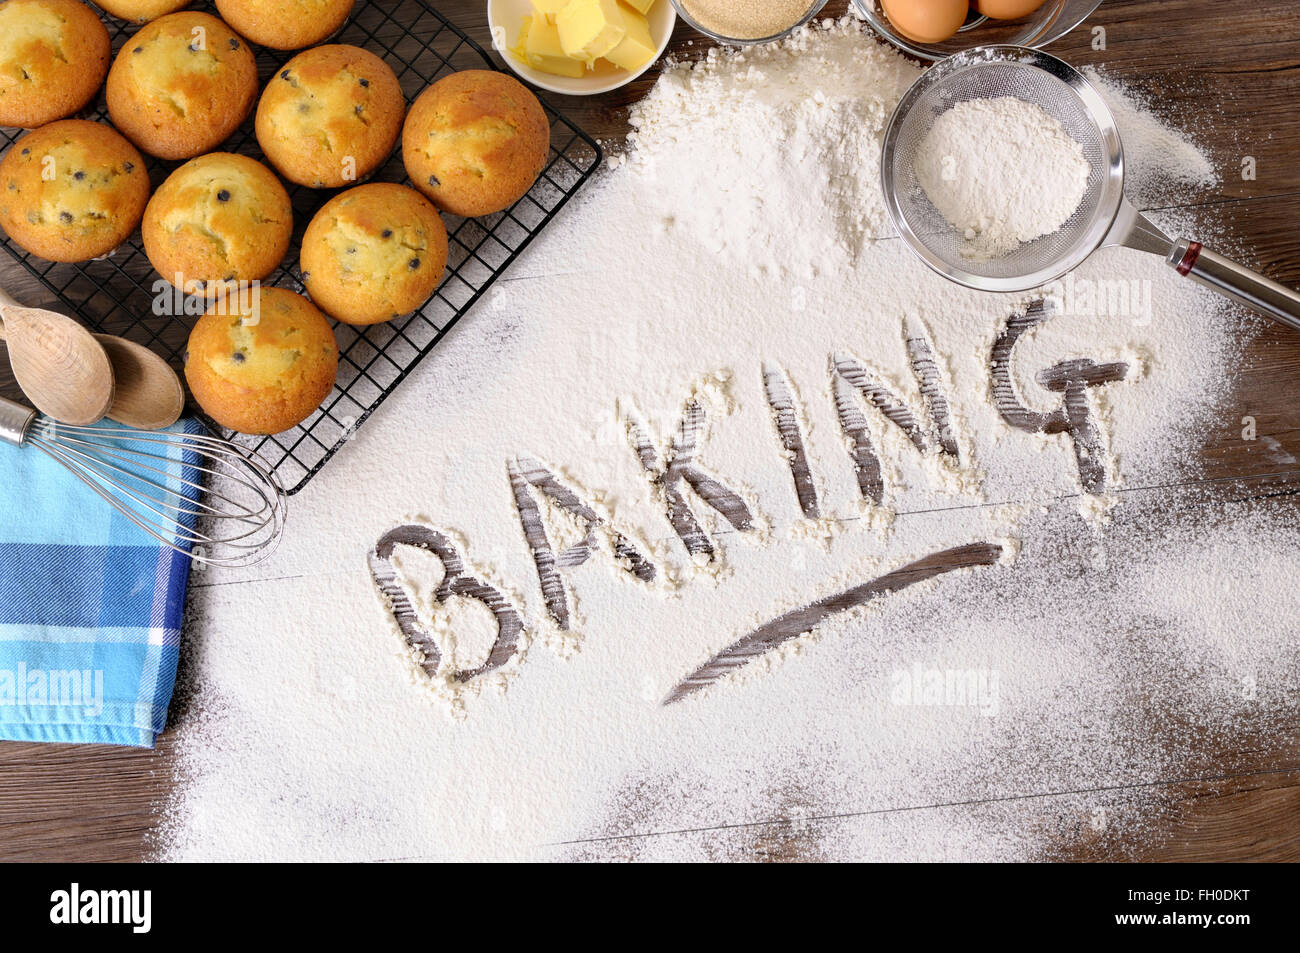 Le mot écrit dans la farine à pâtisserie sur une table en bois sombre avec des muffins et des ingrédients. Banque D'Images